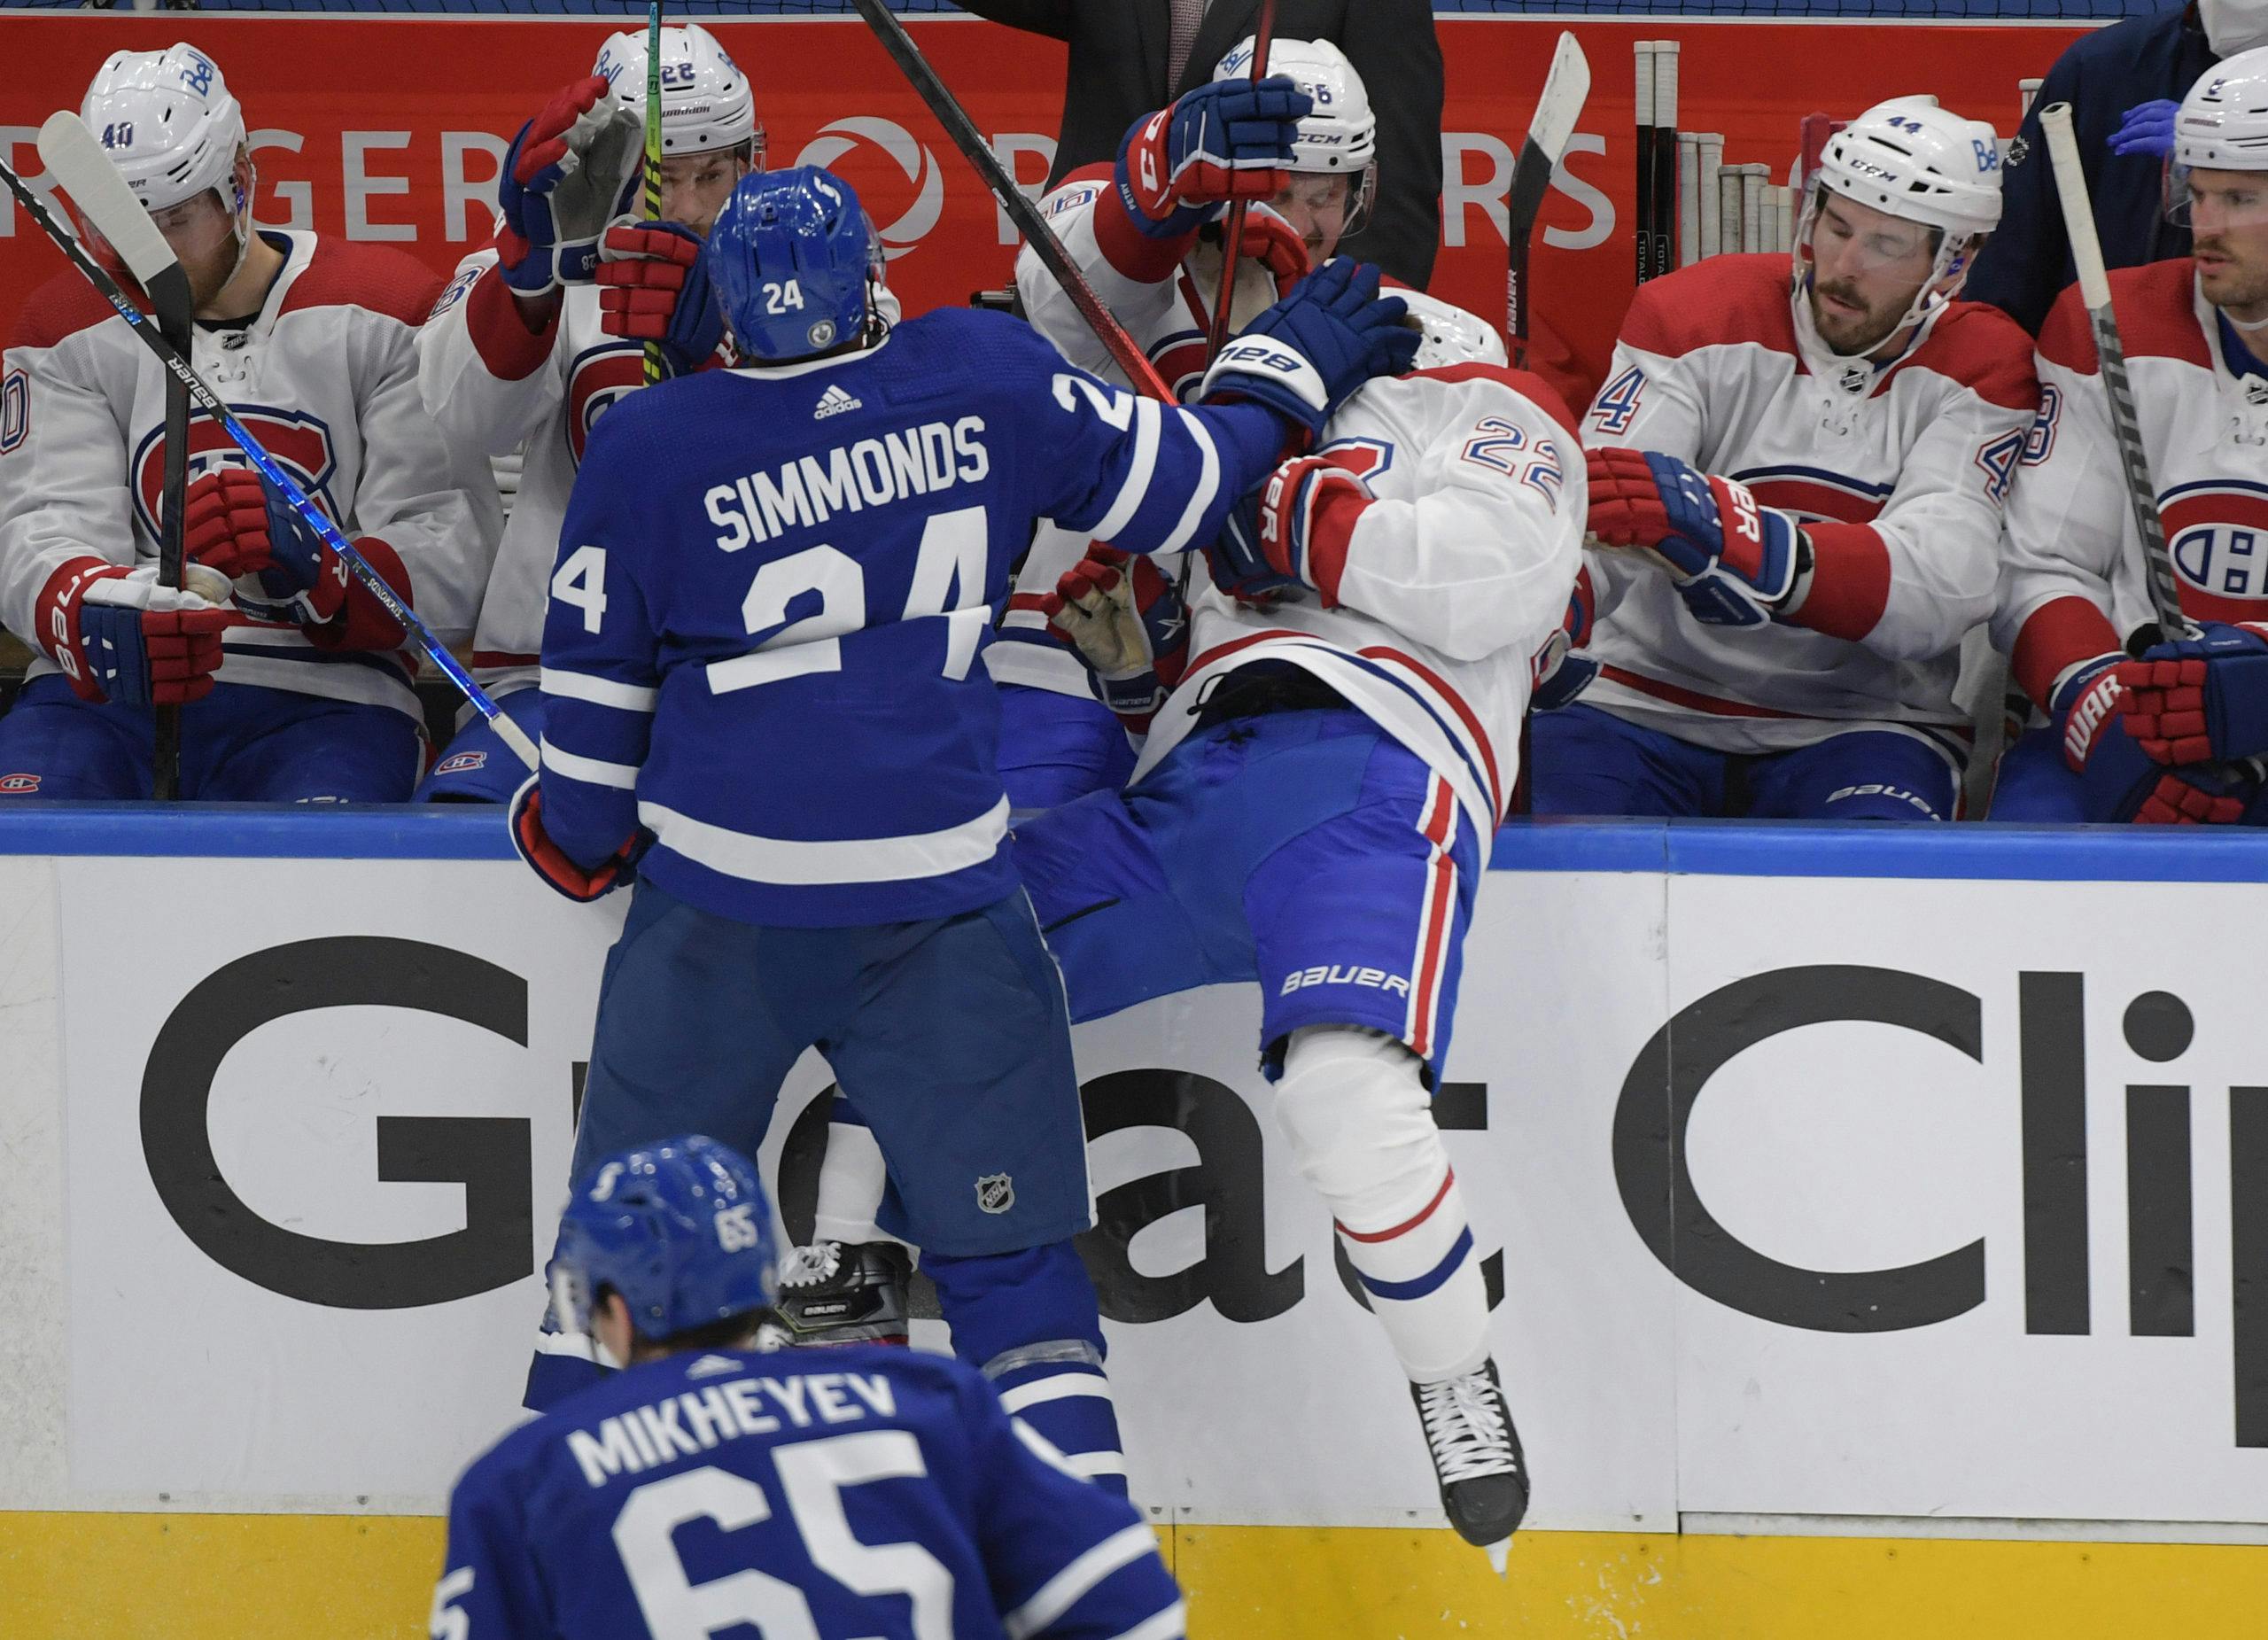 Nick Robertson, Wayne Simmonds among call-ups for Maple Leafs